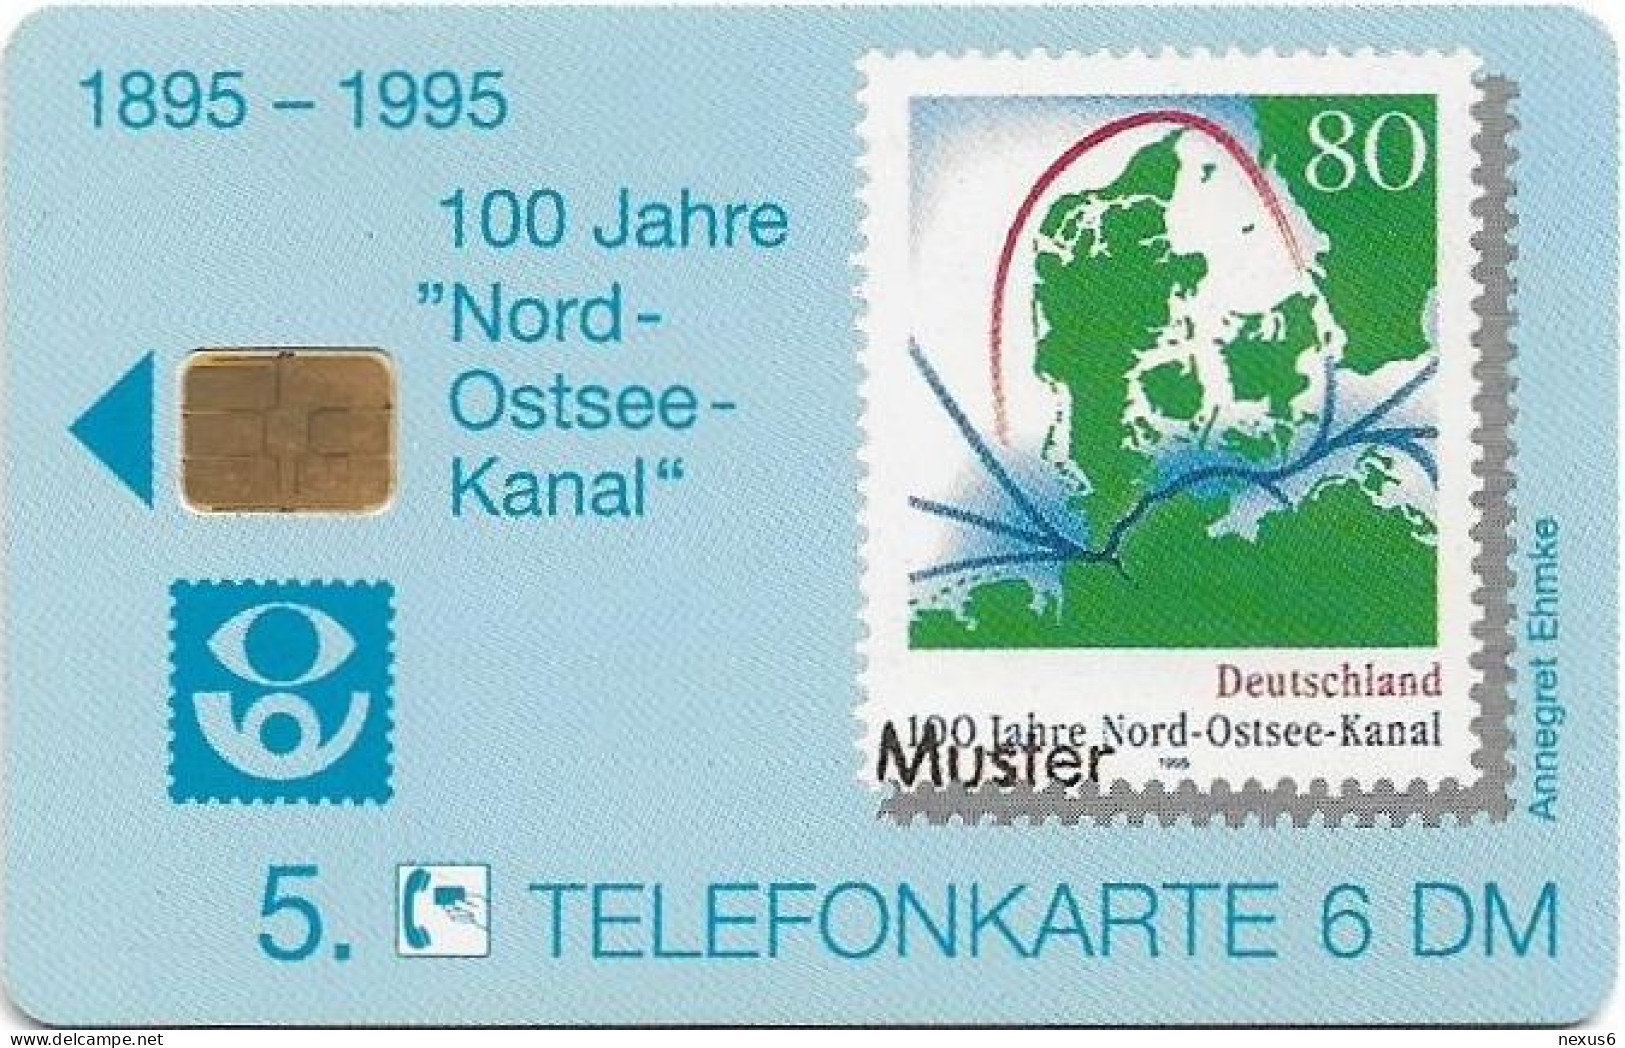 Germany - Kieler Philatelisten-Verein (100 Jahre Nord-Ostsee-Kanal) - O 0994 - 06.1995, 6DM, 1.000ex, Mint - O-Series : Series Clientes Excluidos Servicio De Colección